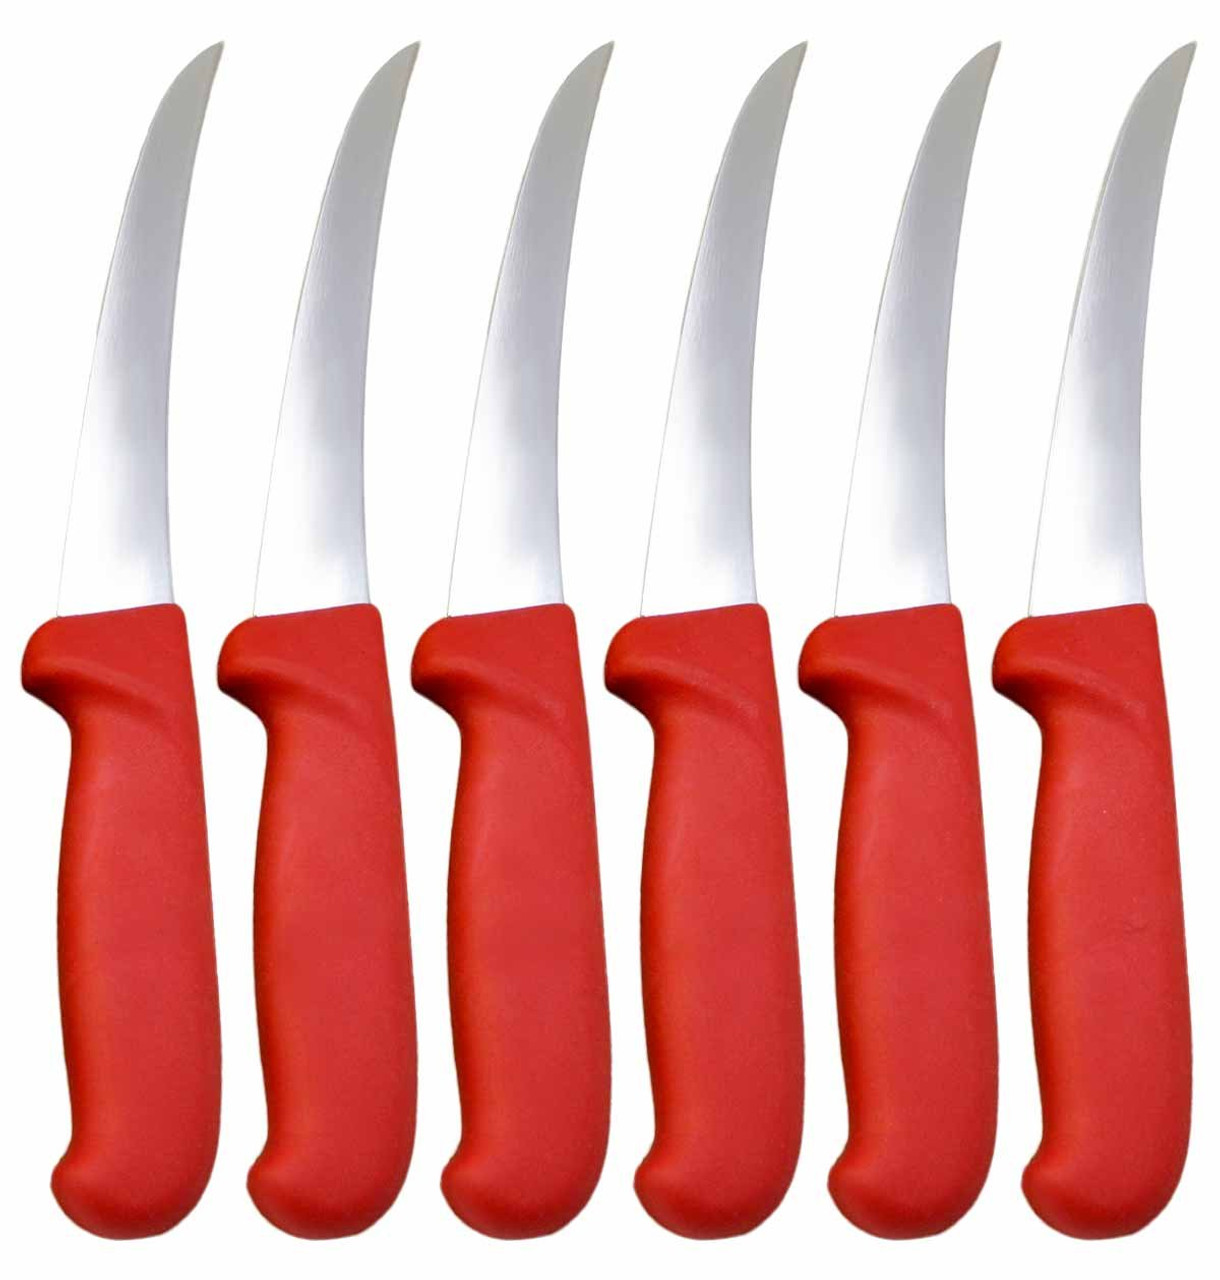 Curved Standard Cozzini Boning Knives (6) - Walton's